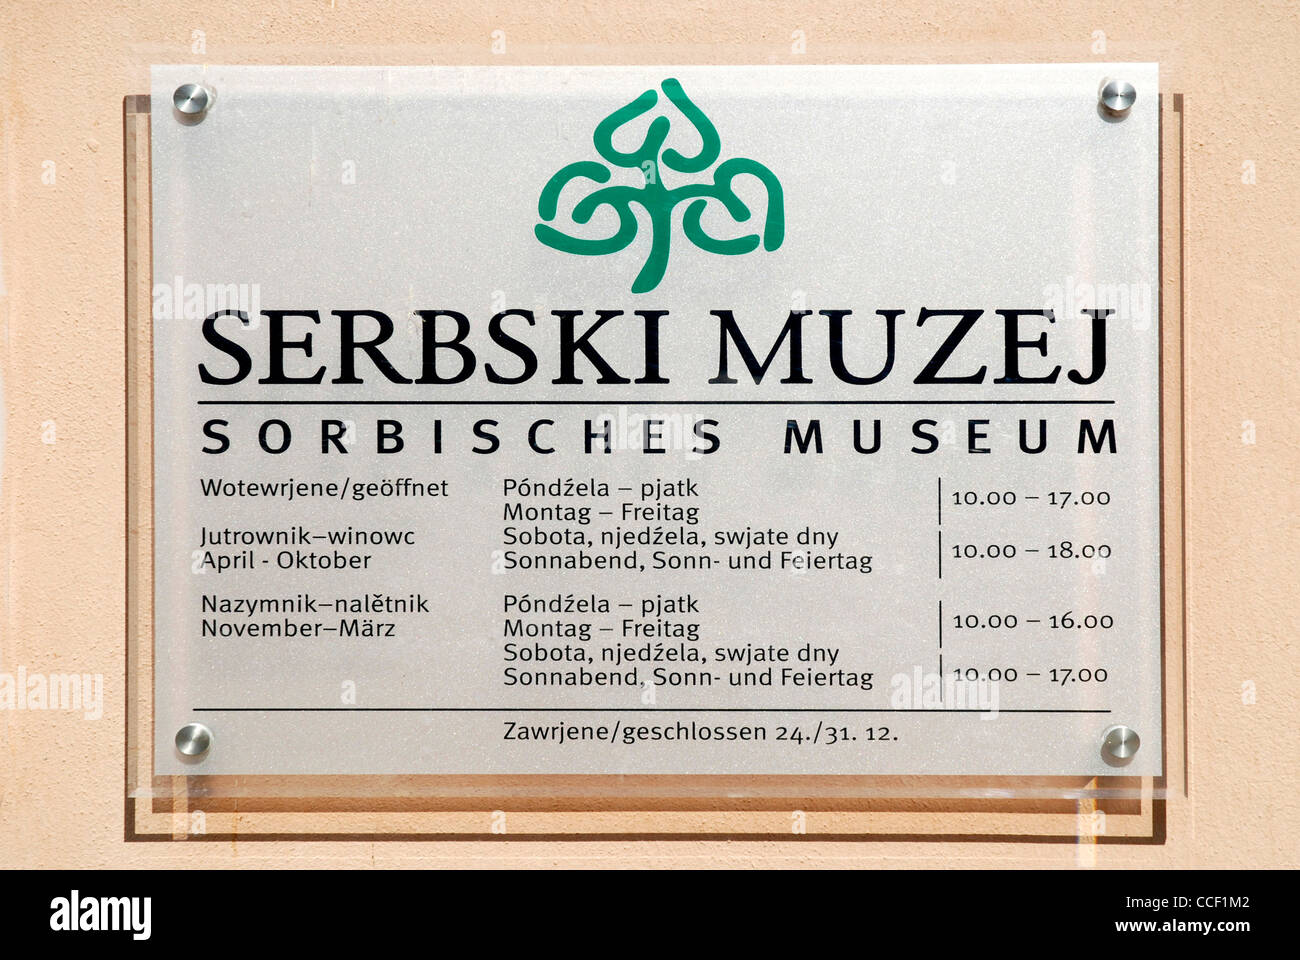 Sorbian museum Serbski Muzej on the Ortenburg in Bautzen. Stock Photo